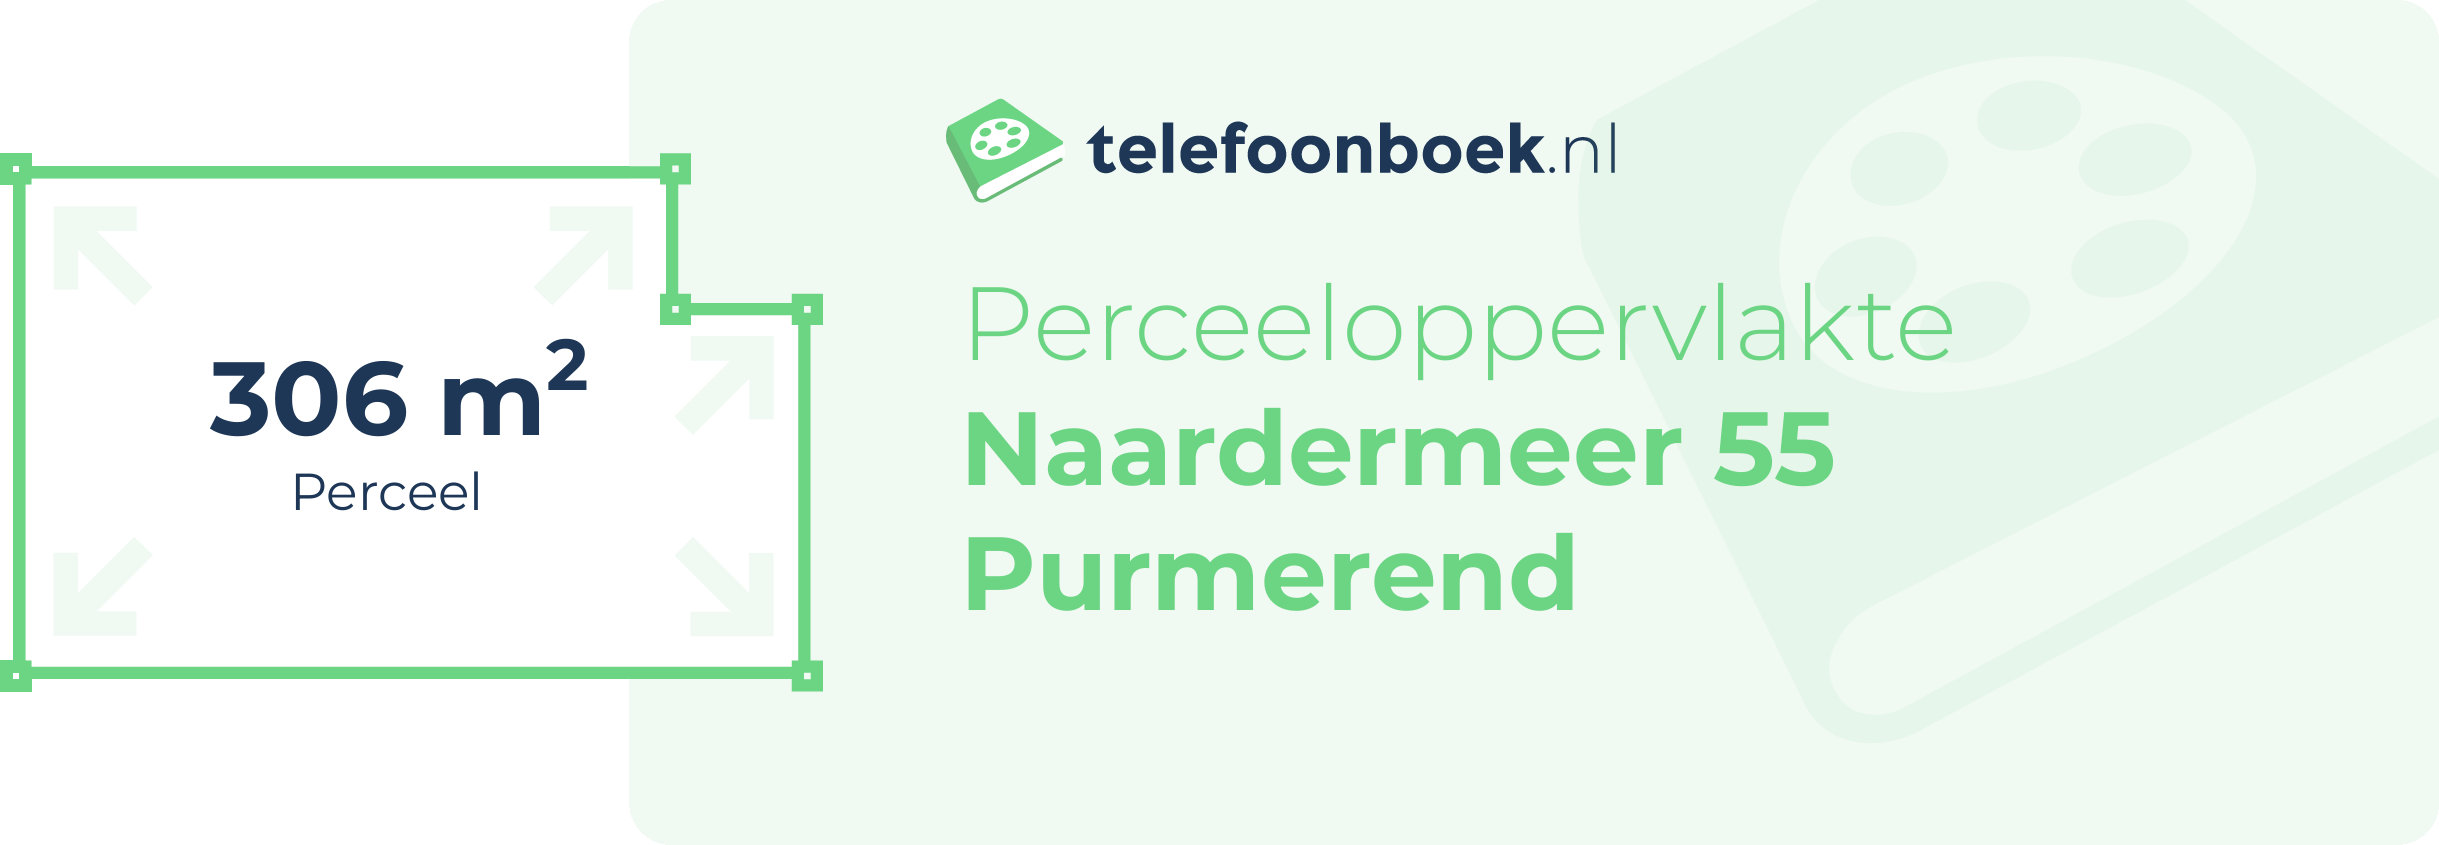 Perceeloppervlakte Naardermeer 55 Purmerend